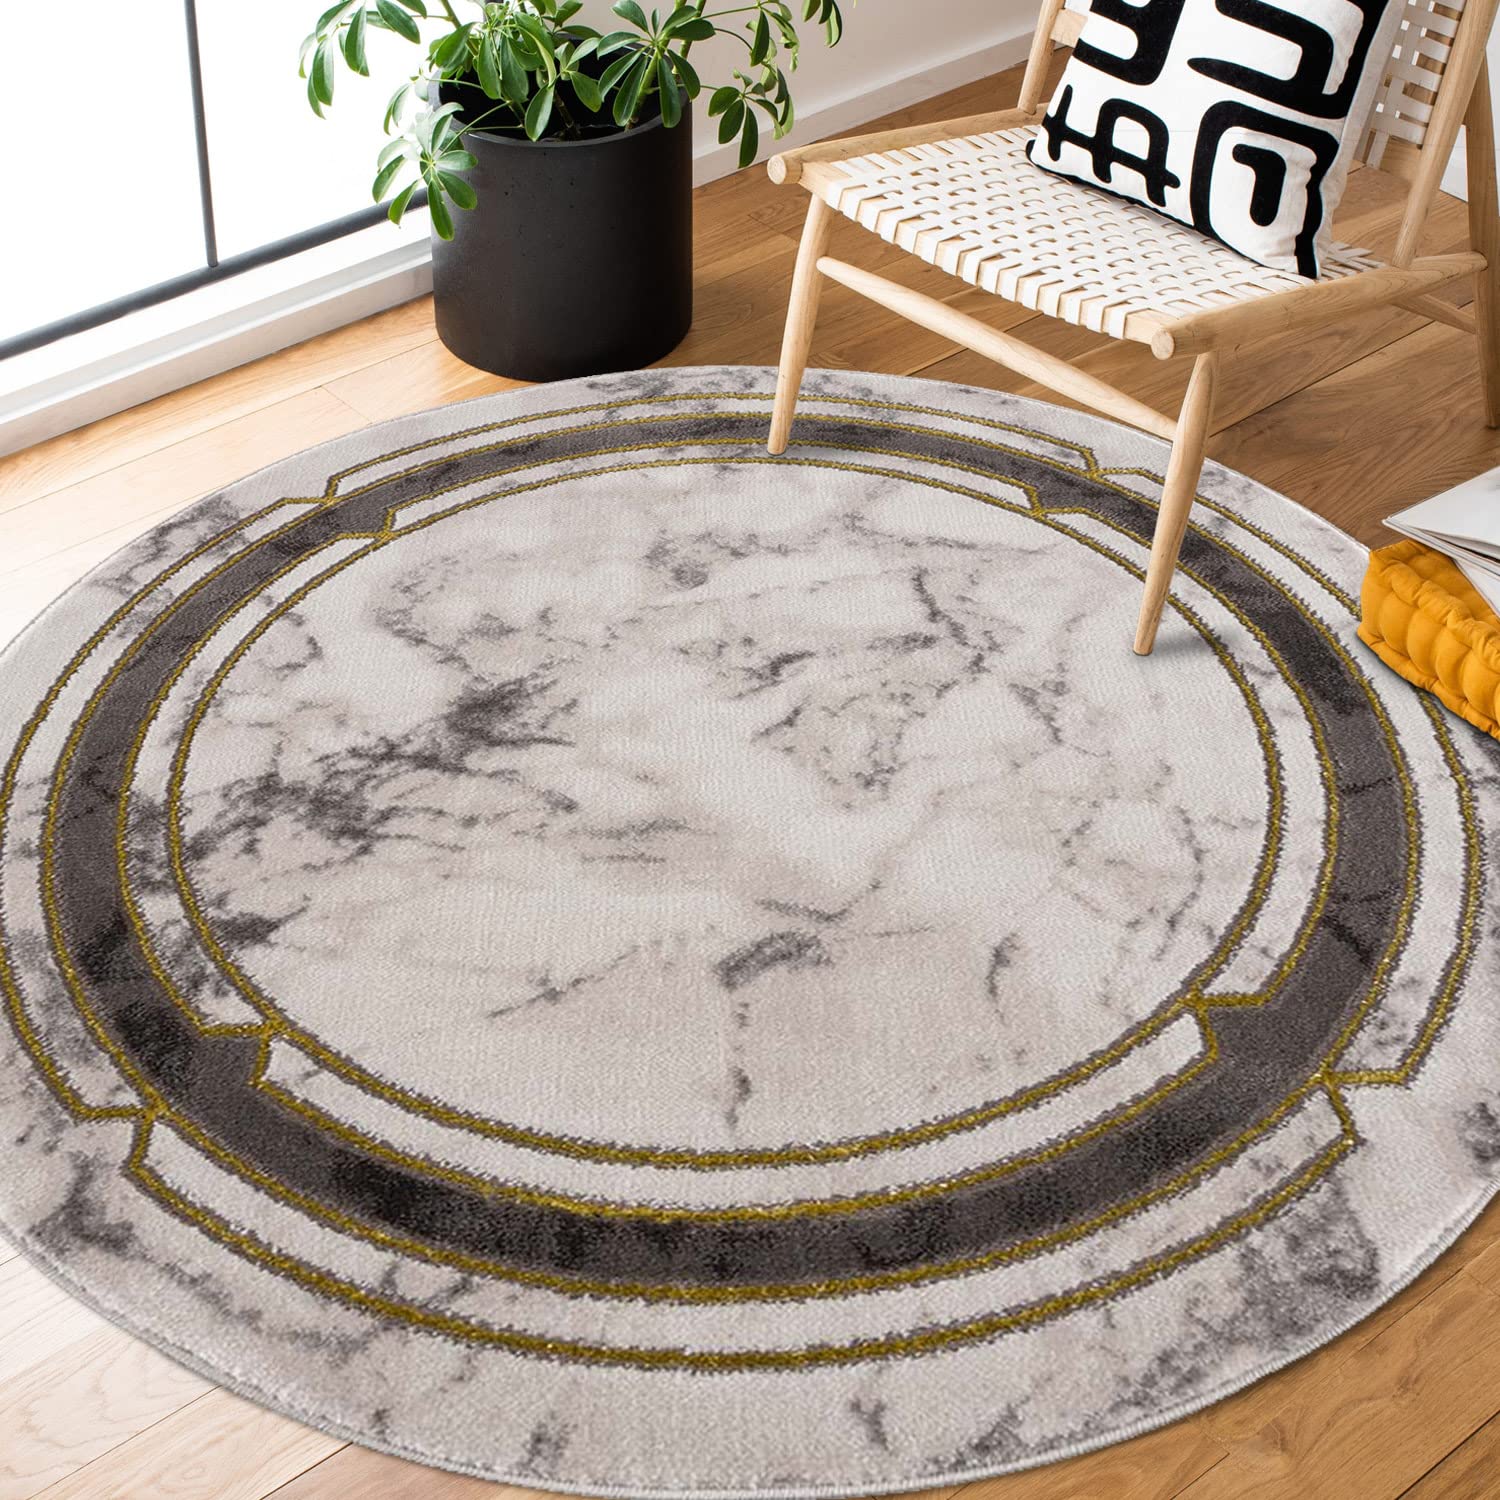 carpet city Teppich Wohnzimmer - Bordüre 120 cm Rund Grau Golden Meliert - Moderne Teppiche Kurzflor